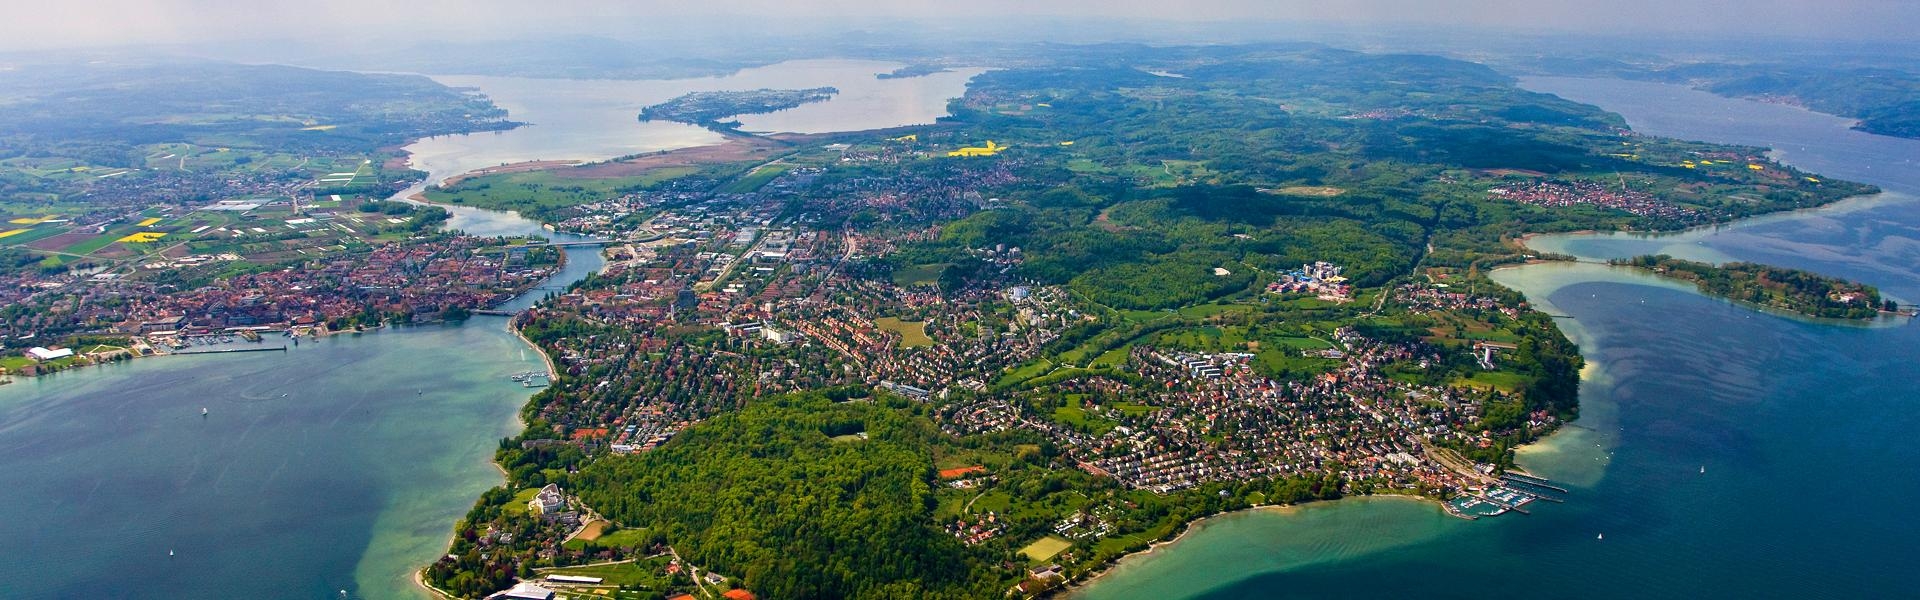 Luftaufnahme von Konstanz mit Hörnle, Lorettowald und Mainau